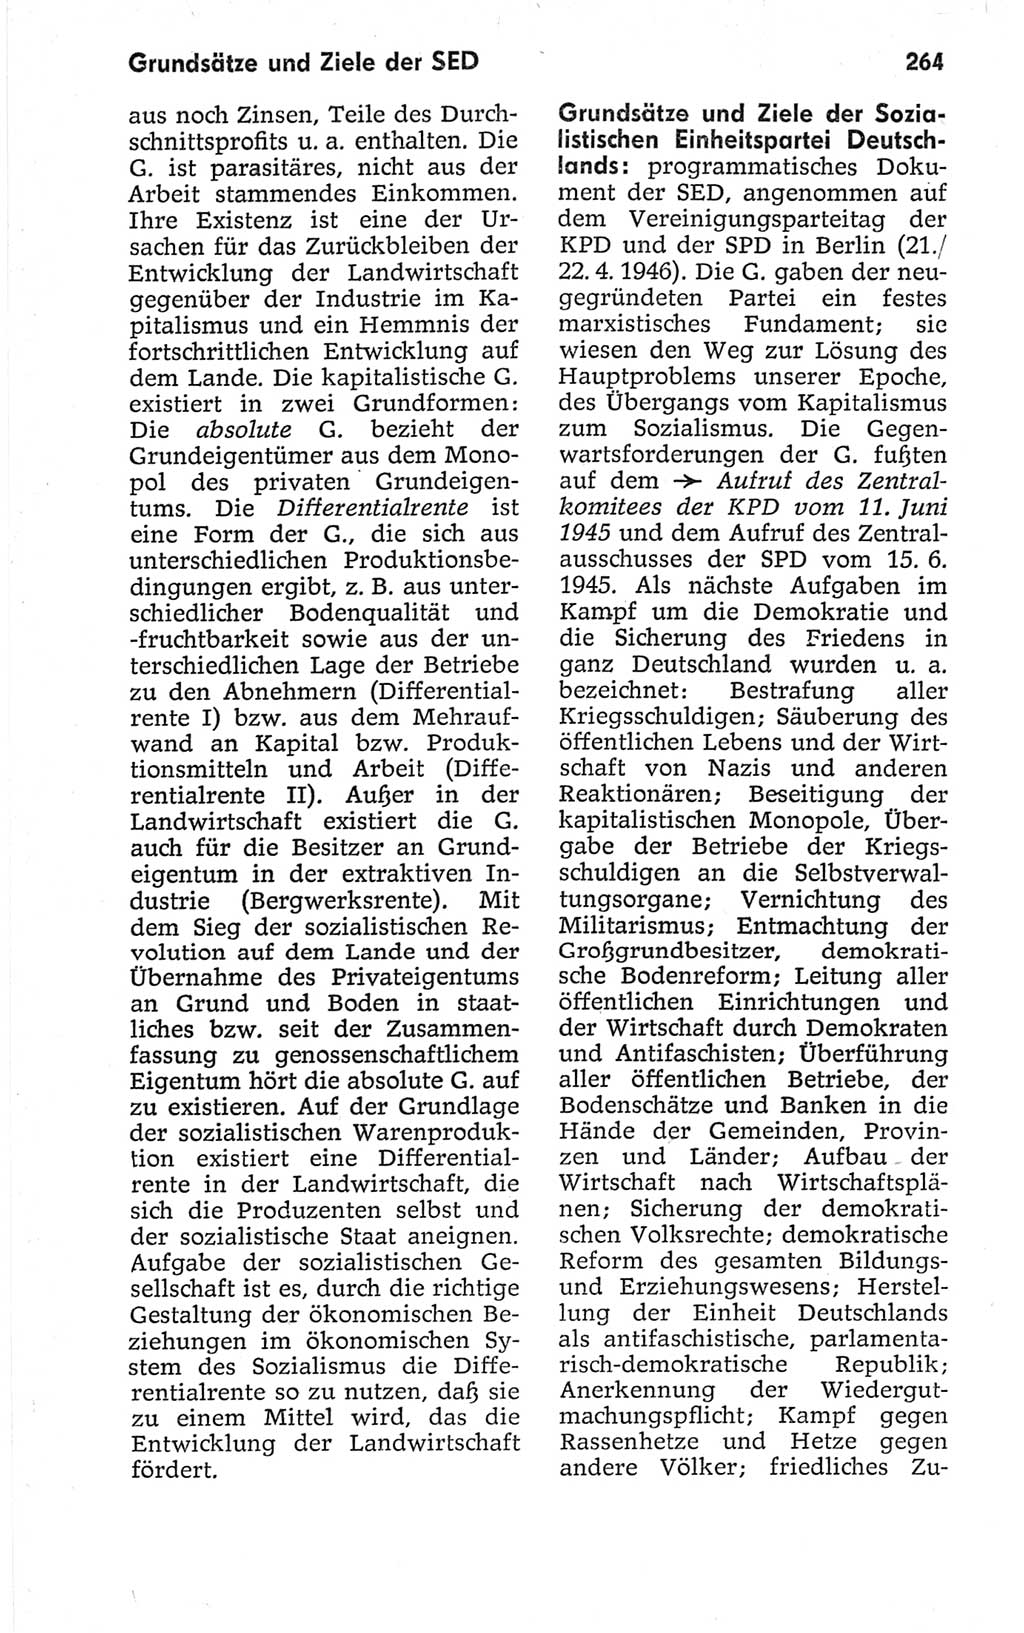 Kleines politisches Wörterbuch [Deutsche Demokratische Republik (DDR)] 1967, Seite 264 (Kl. pol. Wb. DDR 1967, S. 264)